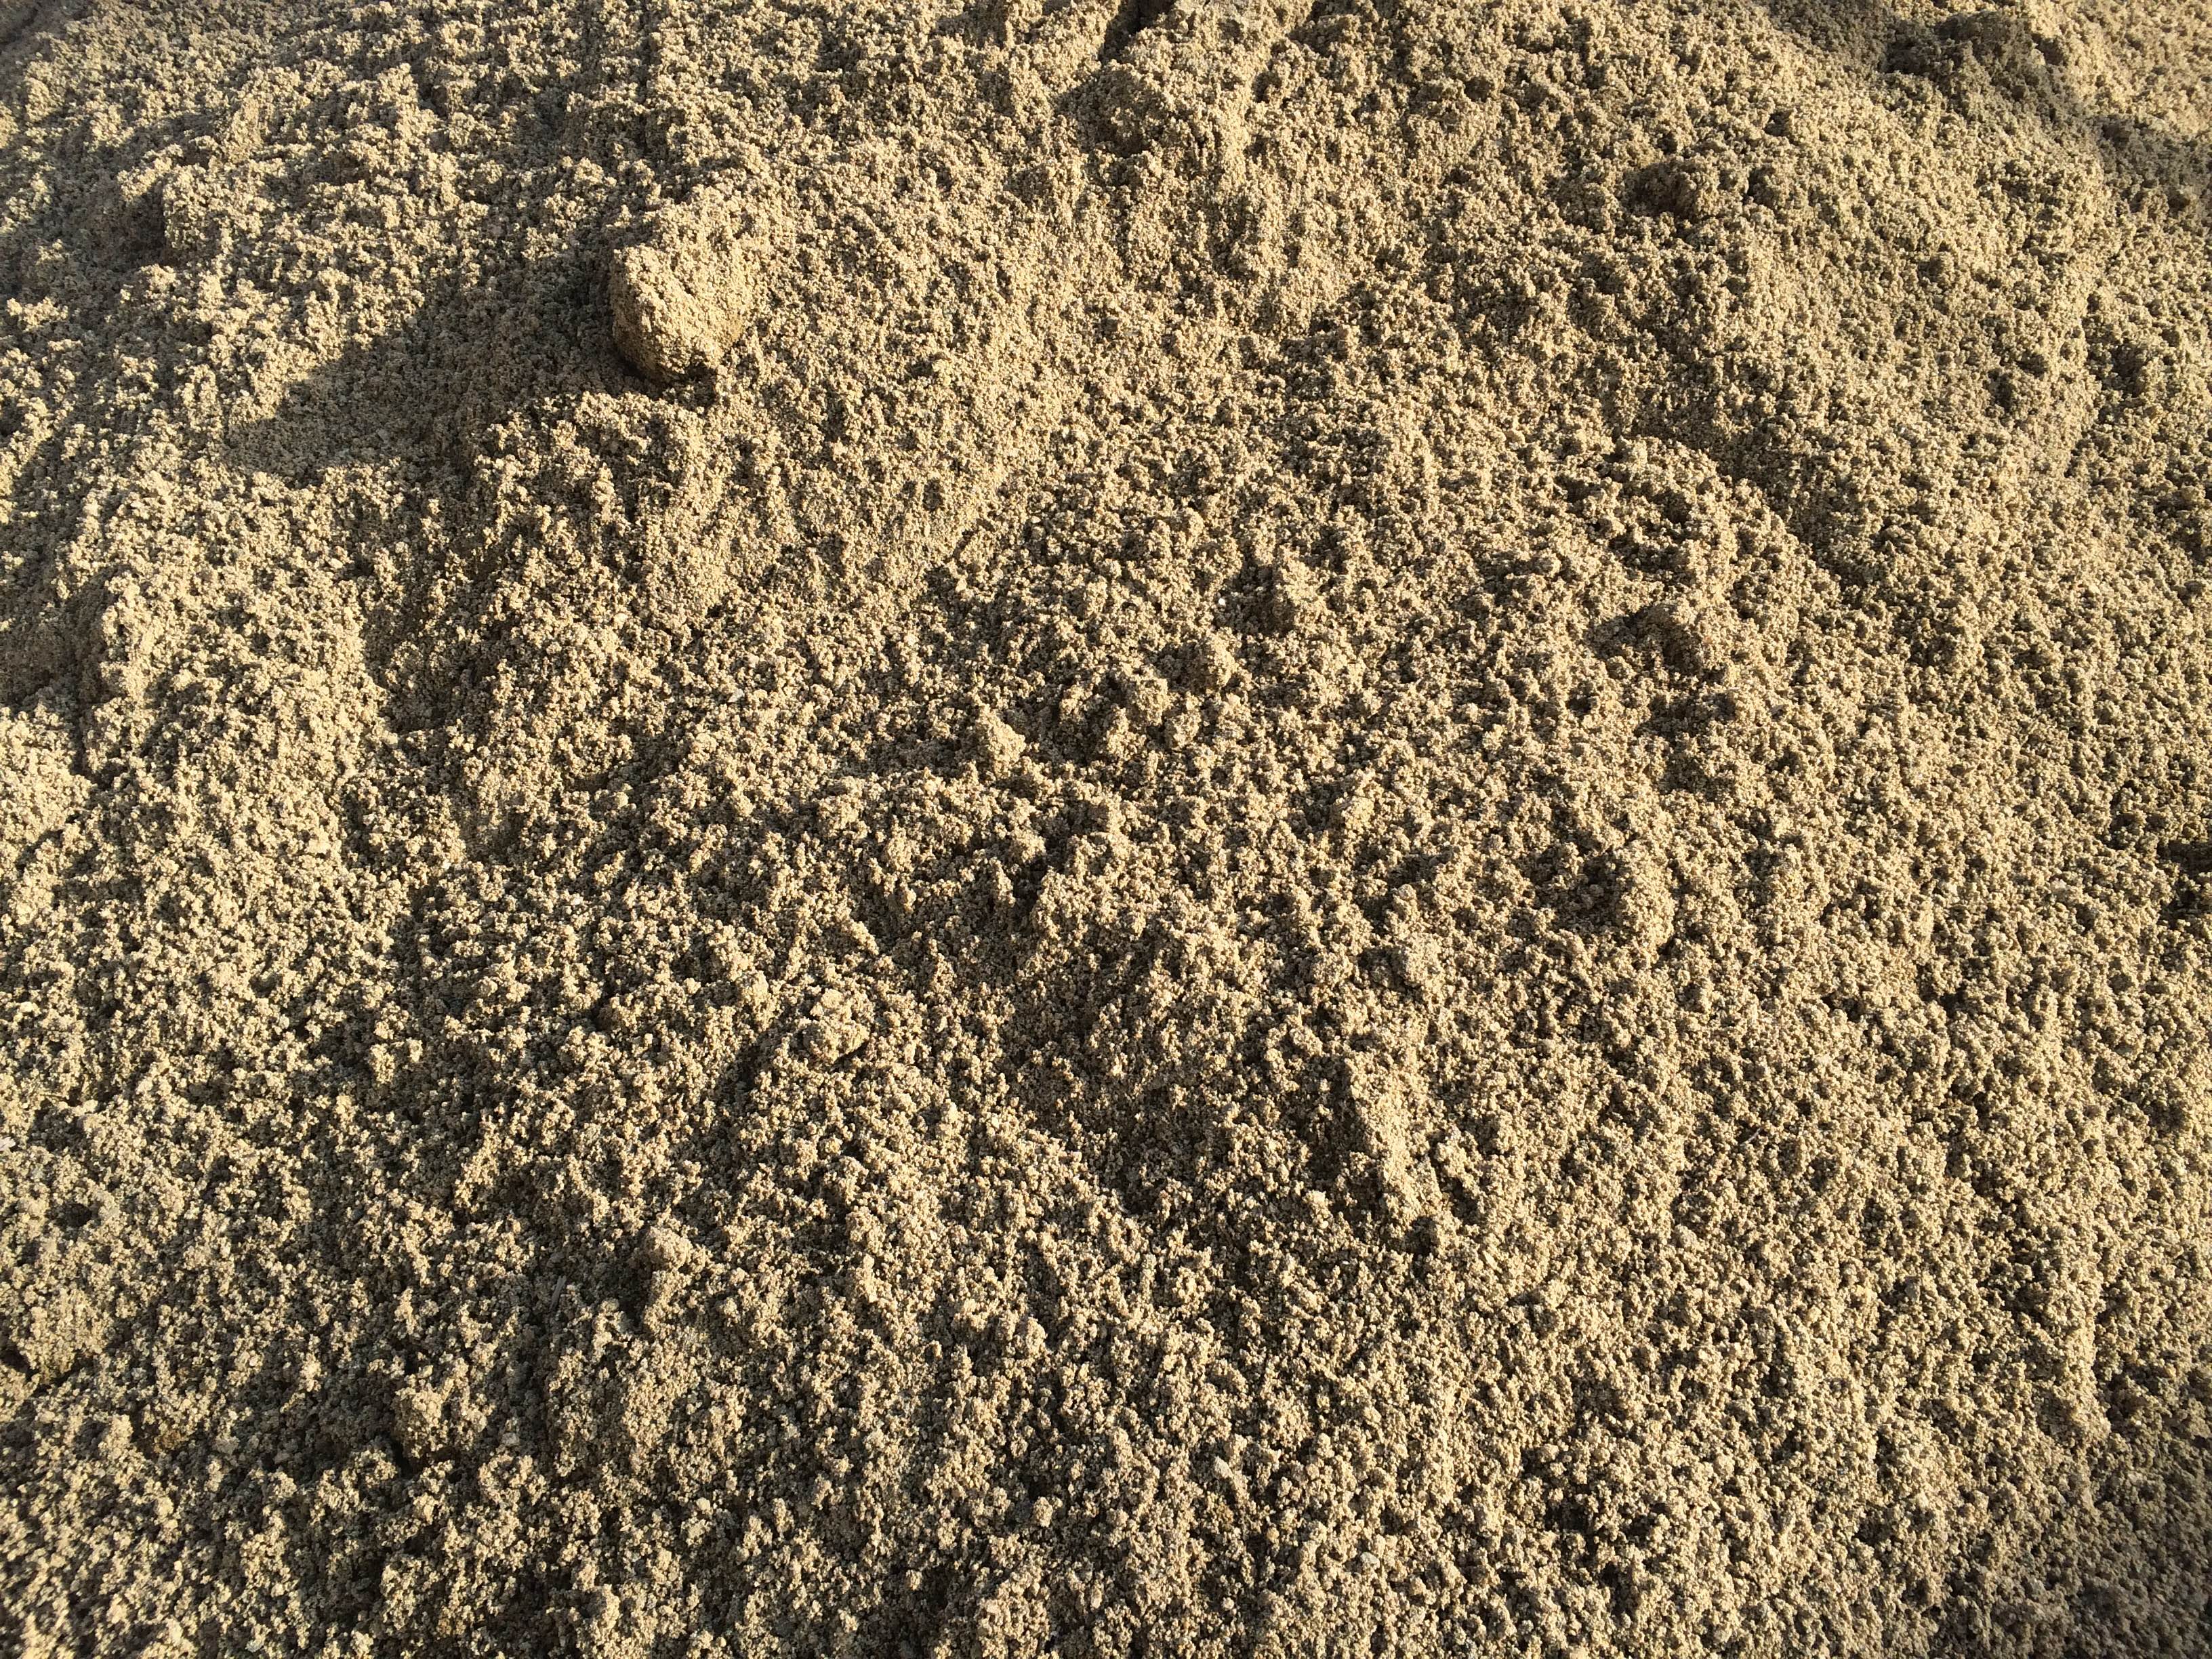 Мытый купить в нижнем новгороде. Модуль крупности песка 2.5. Песок Речной мытый. Речной песок фракция. Песок Речной сеяный.